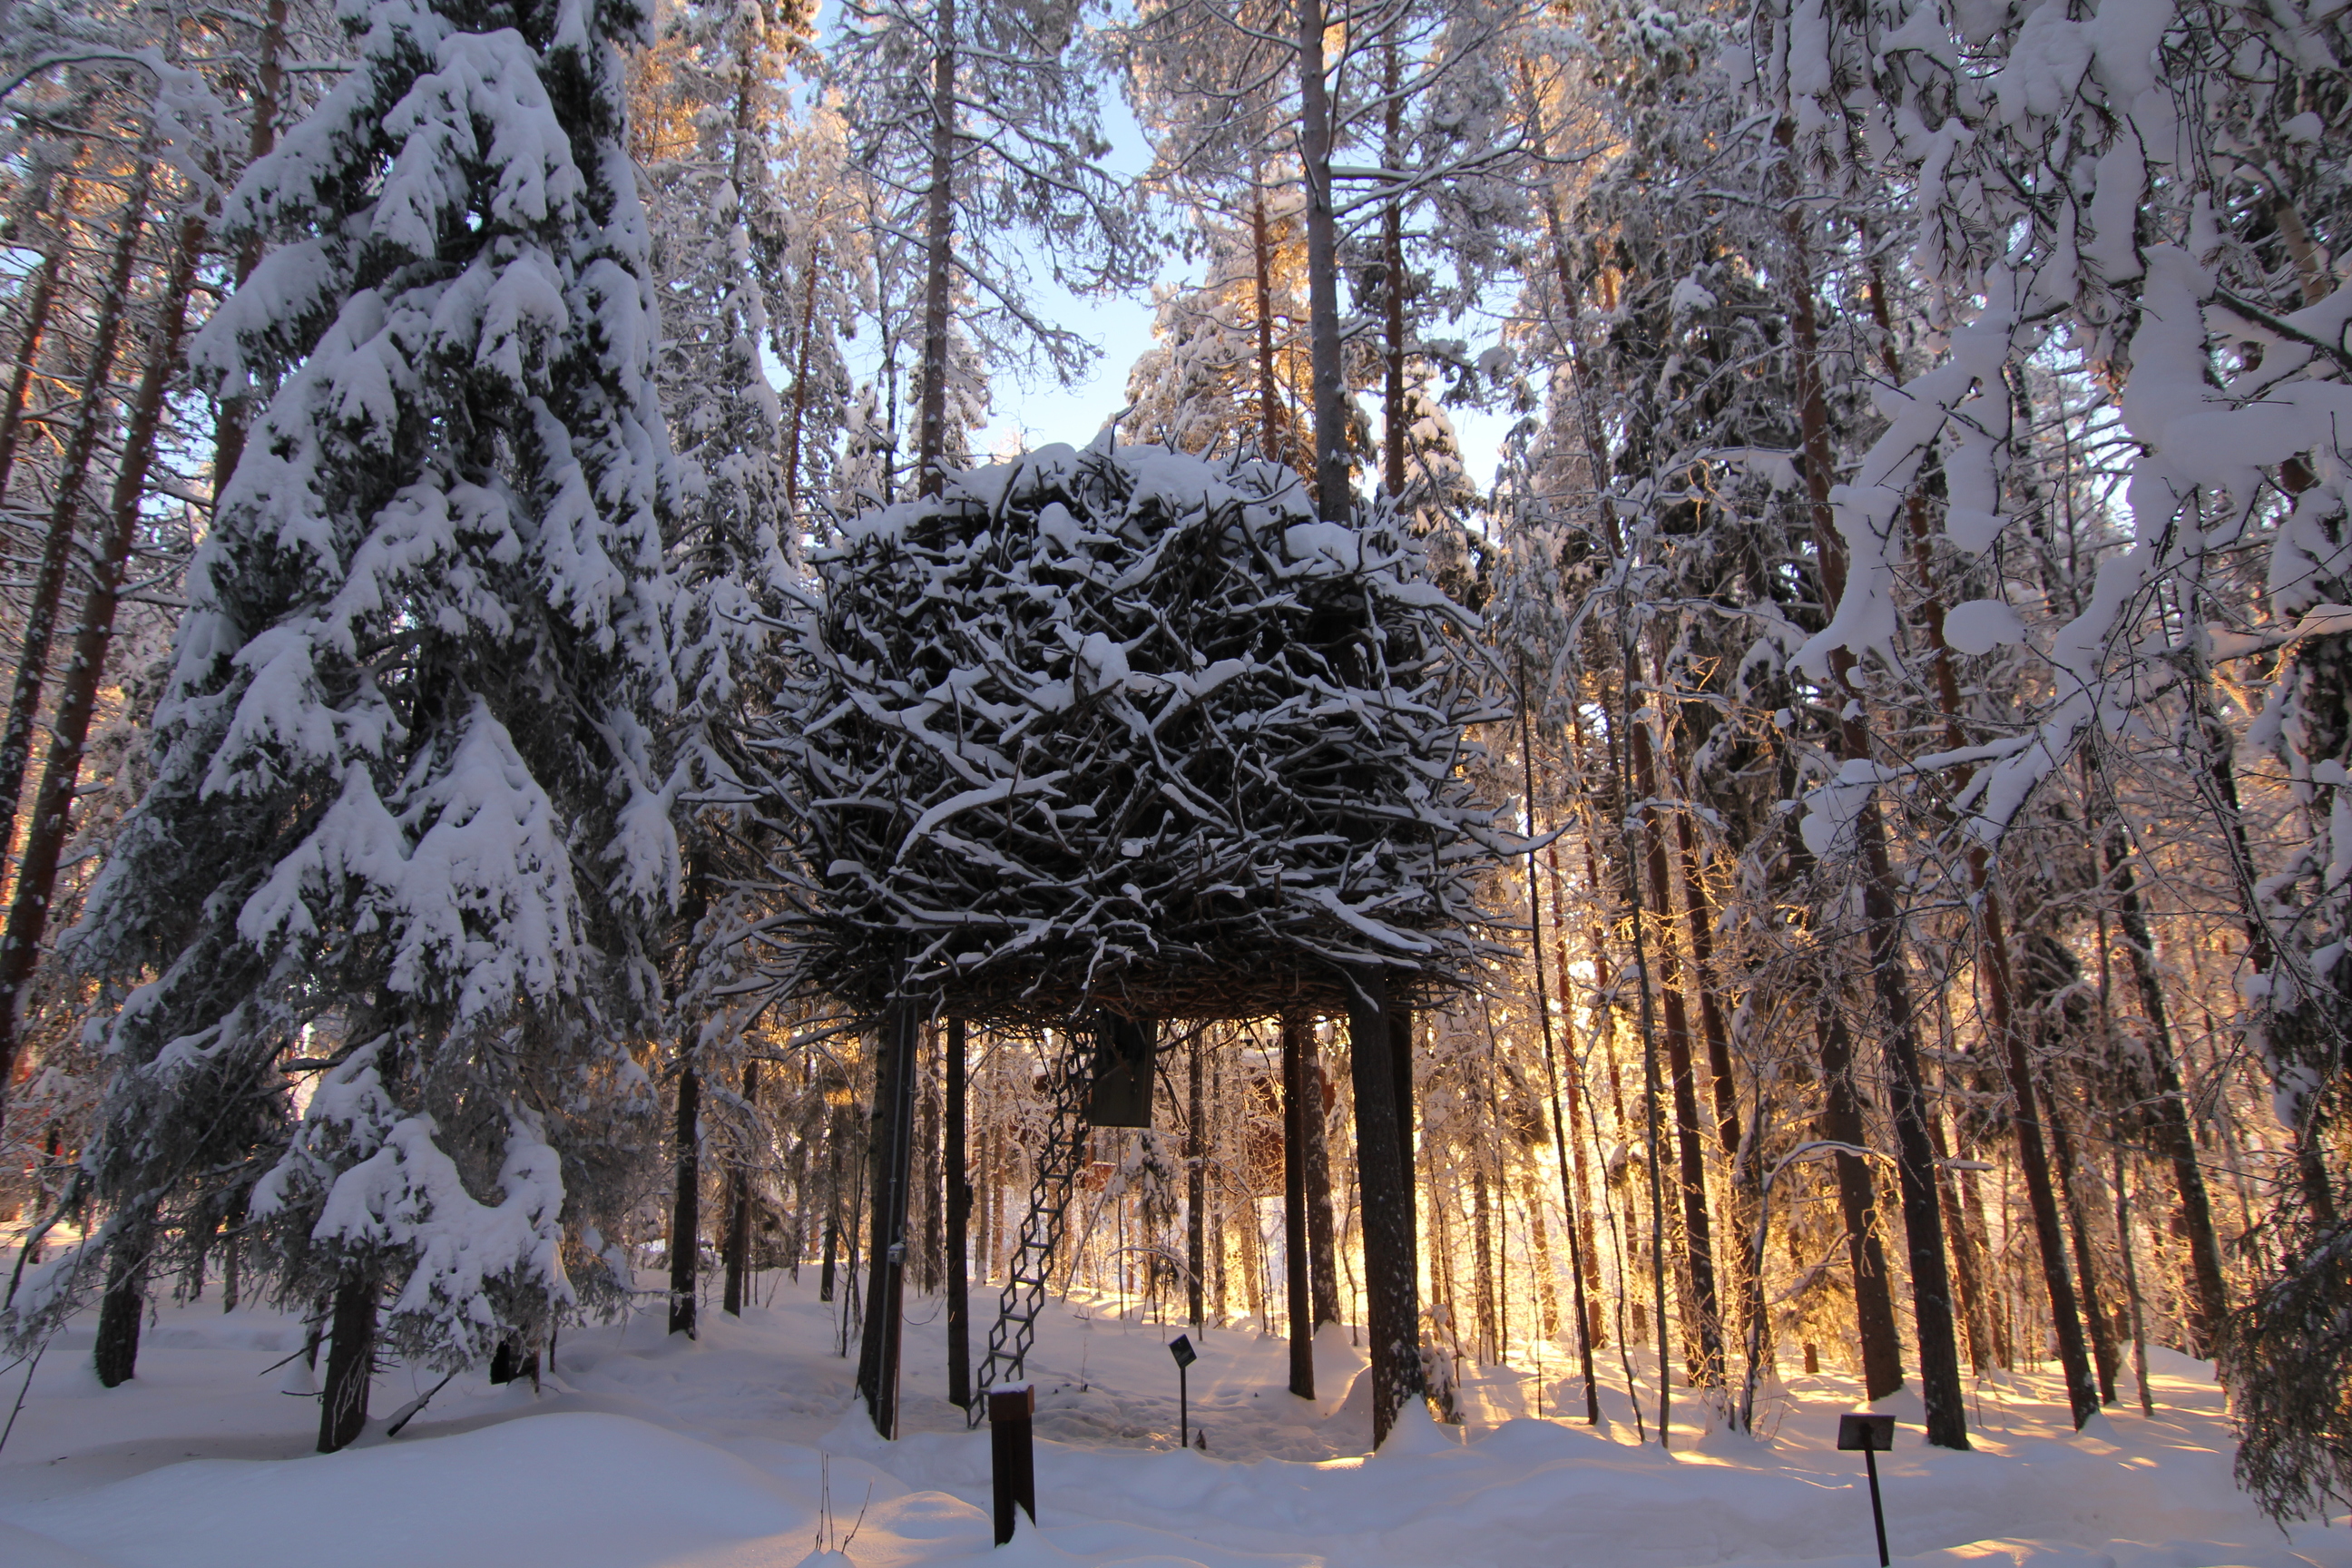 以大量树枝所建构出的 Bird's Nest 外观，让整个树屋自然而然成为森林景观的一部分。